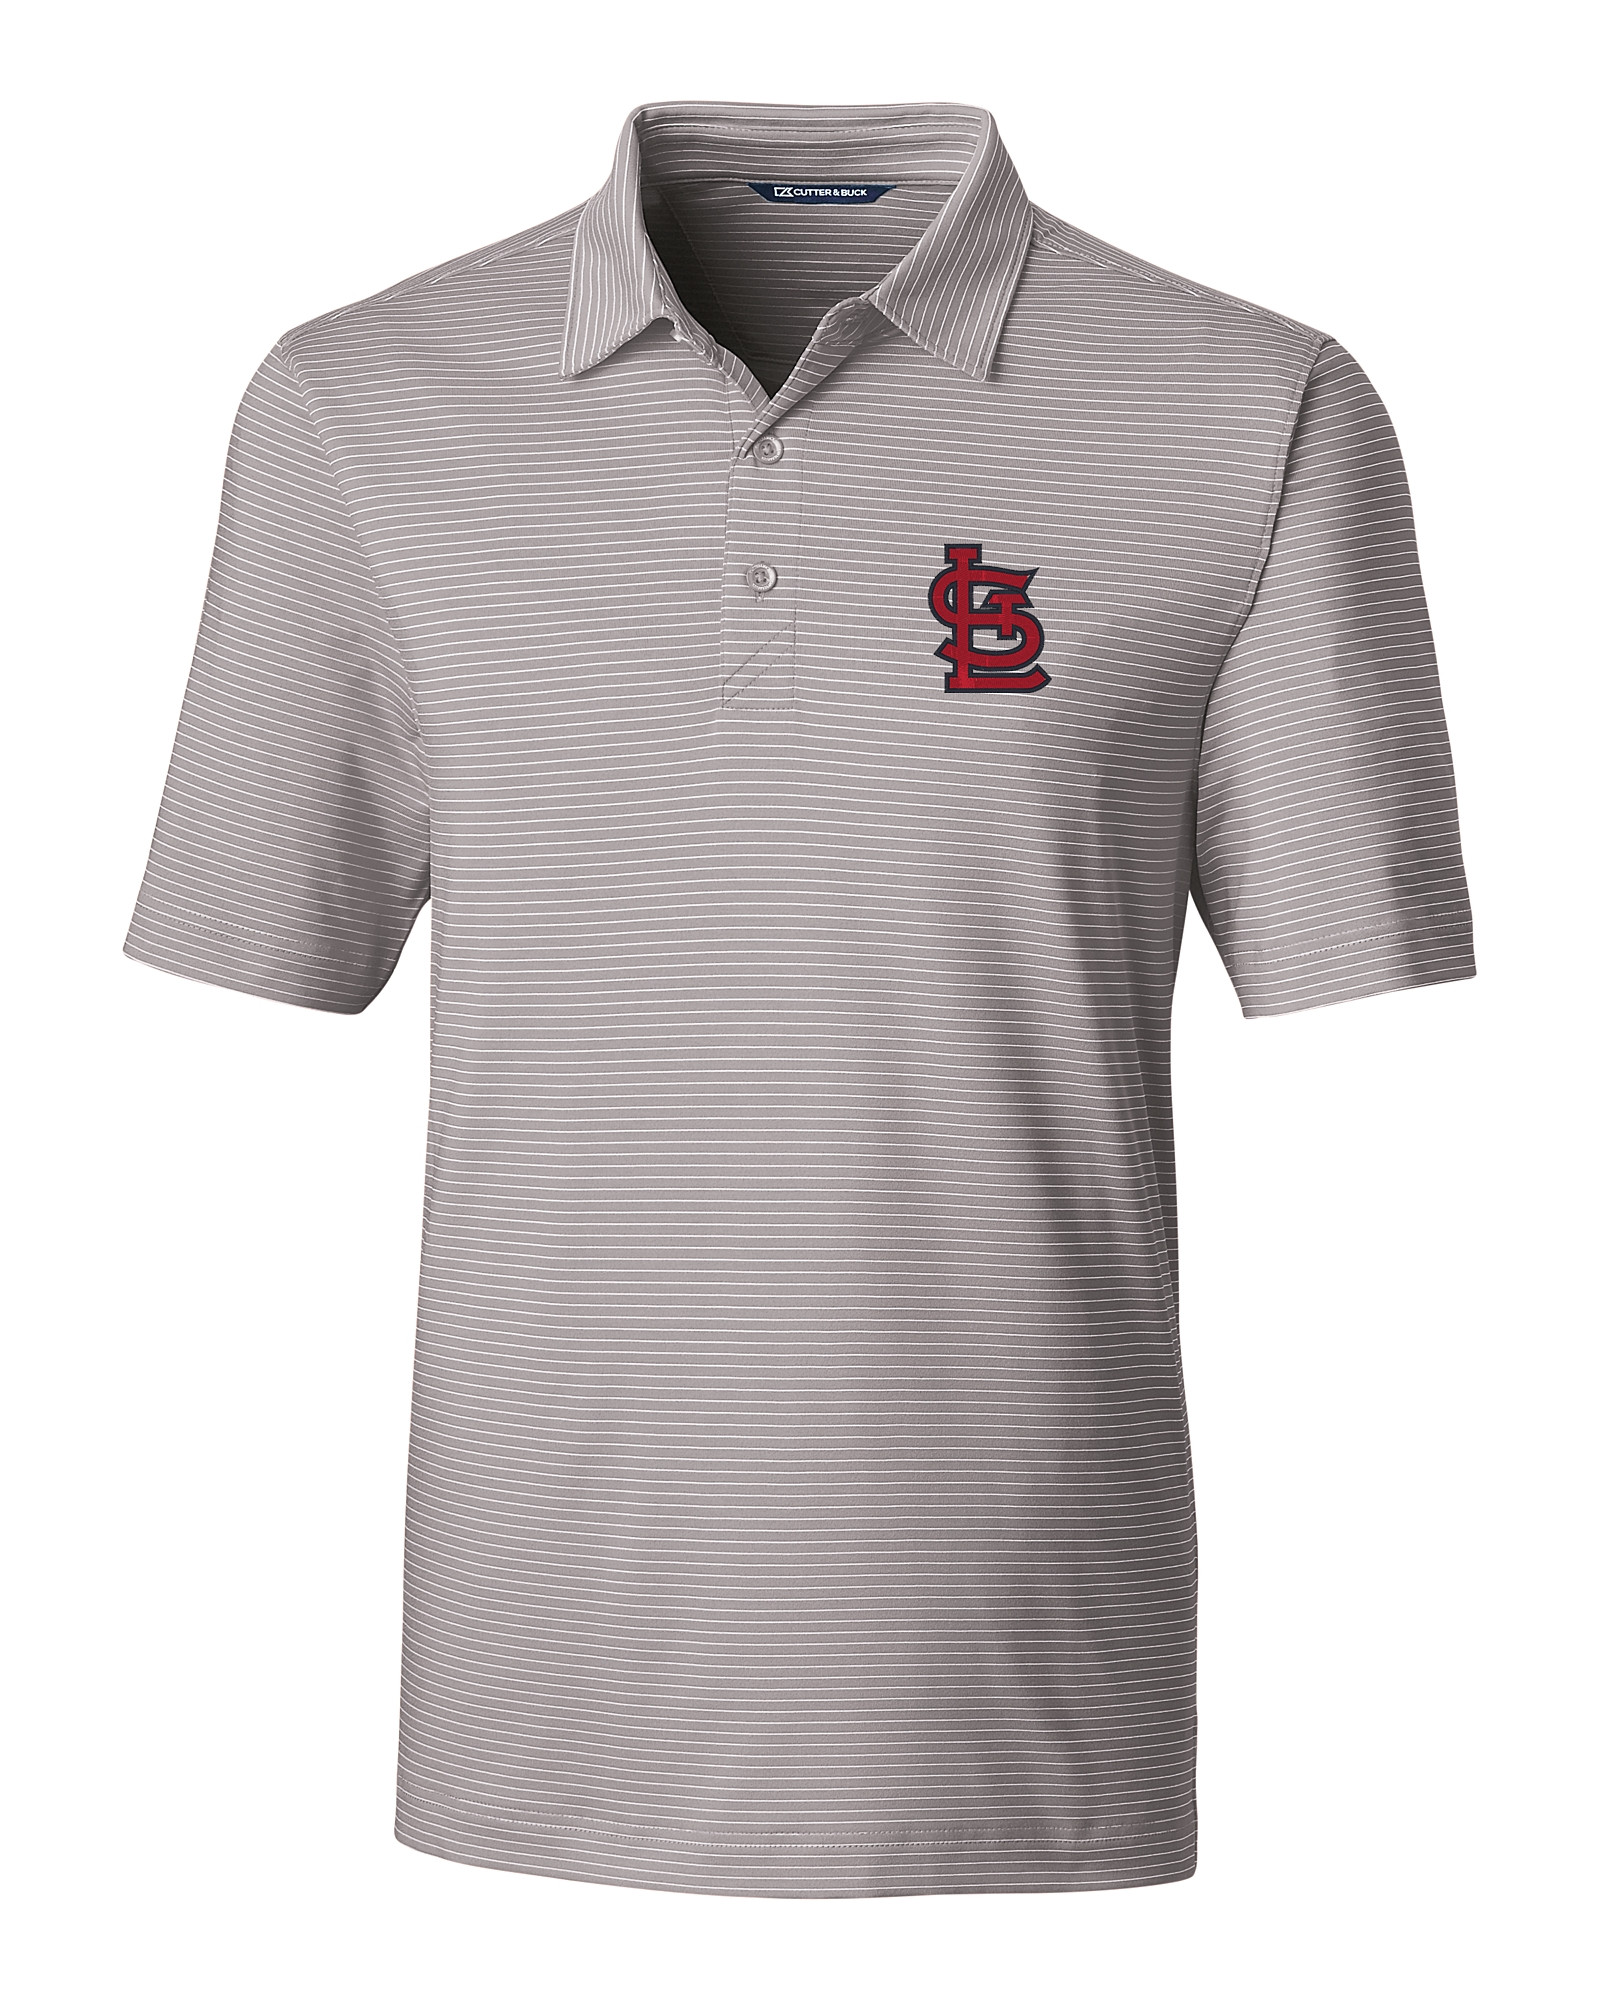 Mens St. Louis Cardinals Polos, Golf Shirt, Cardinals Polo Shirts